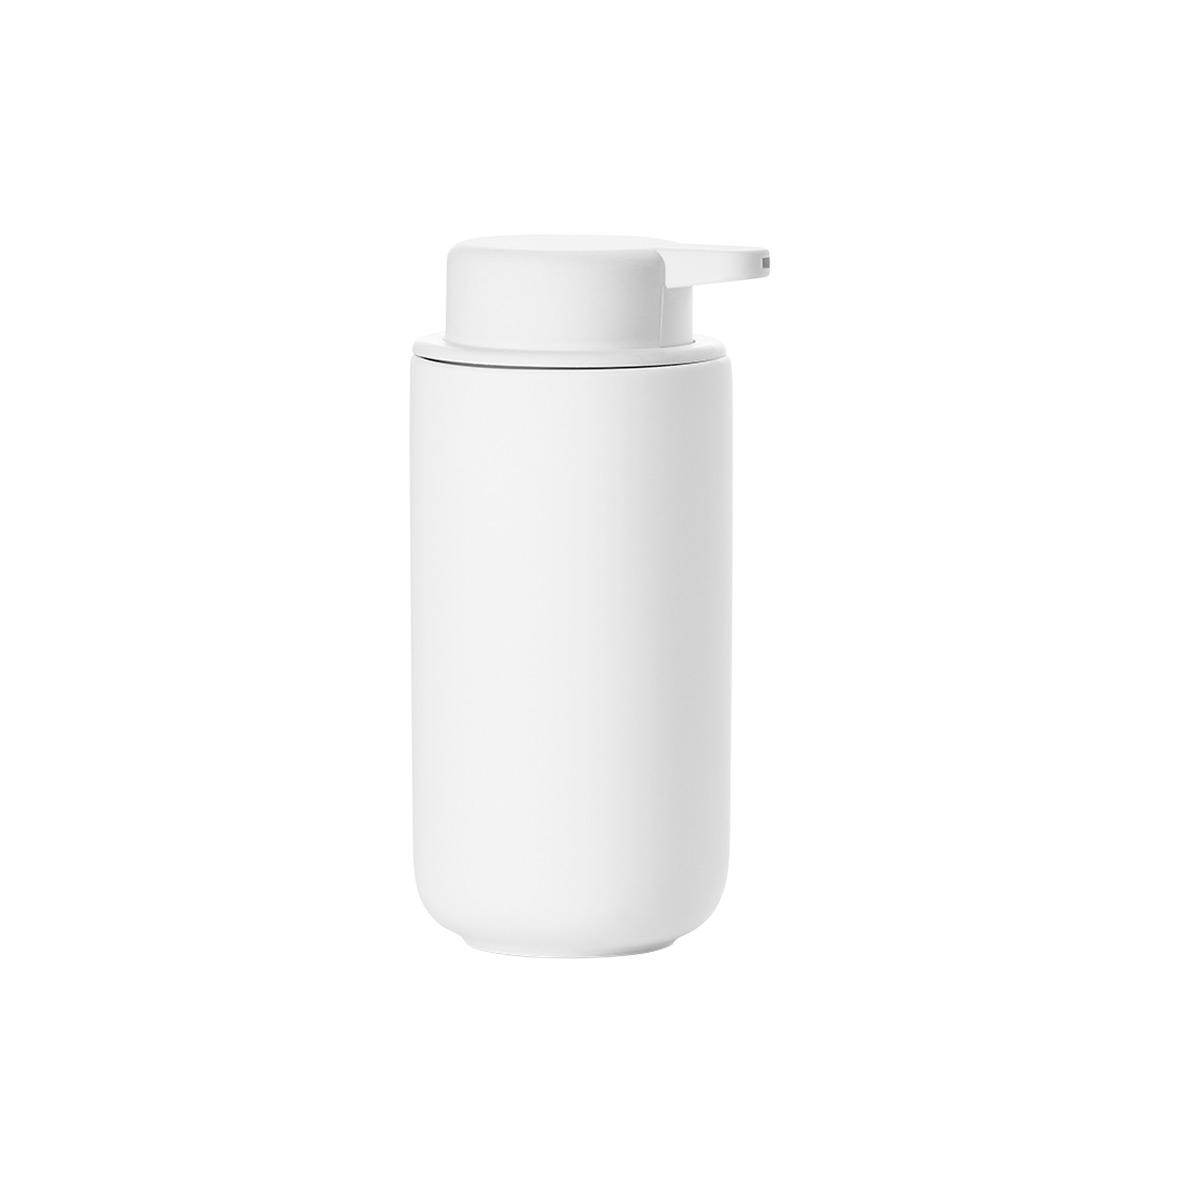 Zone Denmark 15.2 oz UME Soap Dispenser Large White